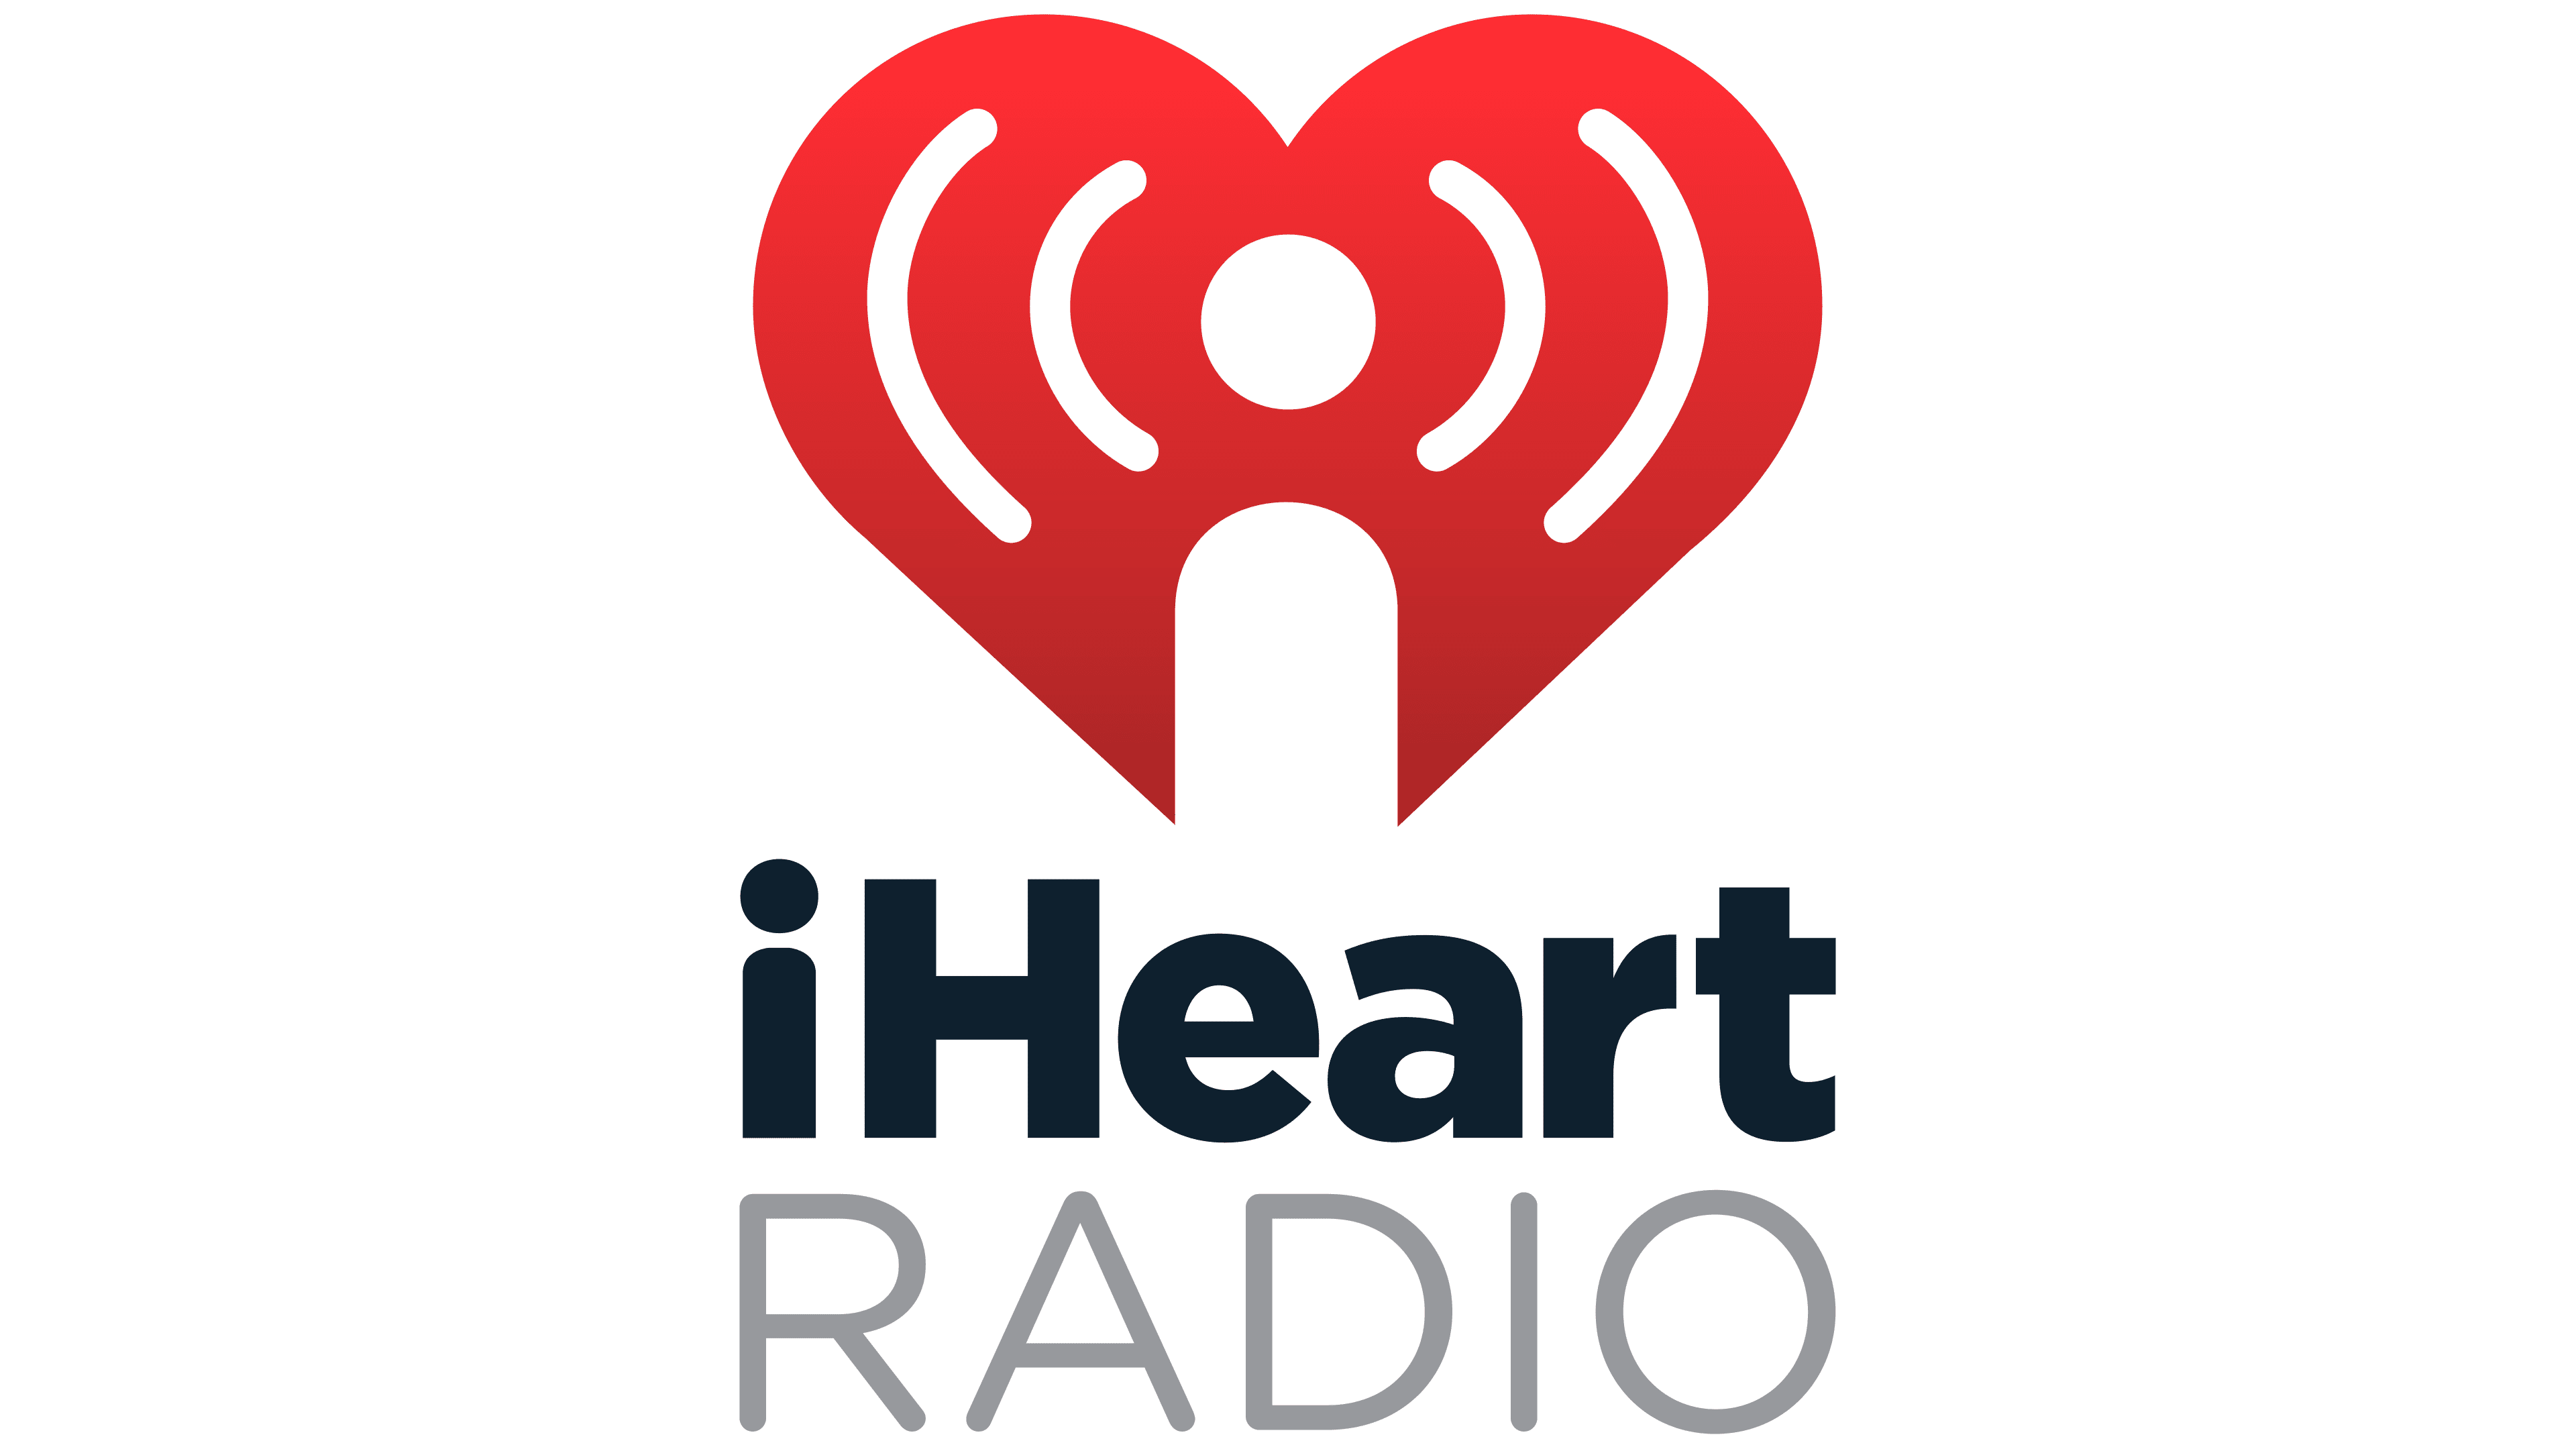 I+heart+radio+logo